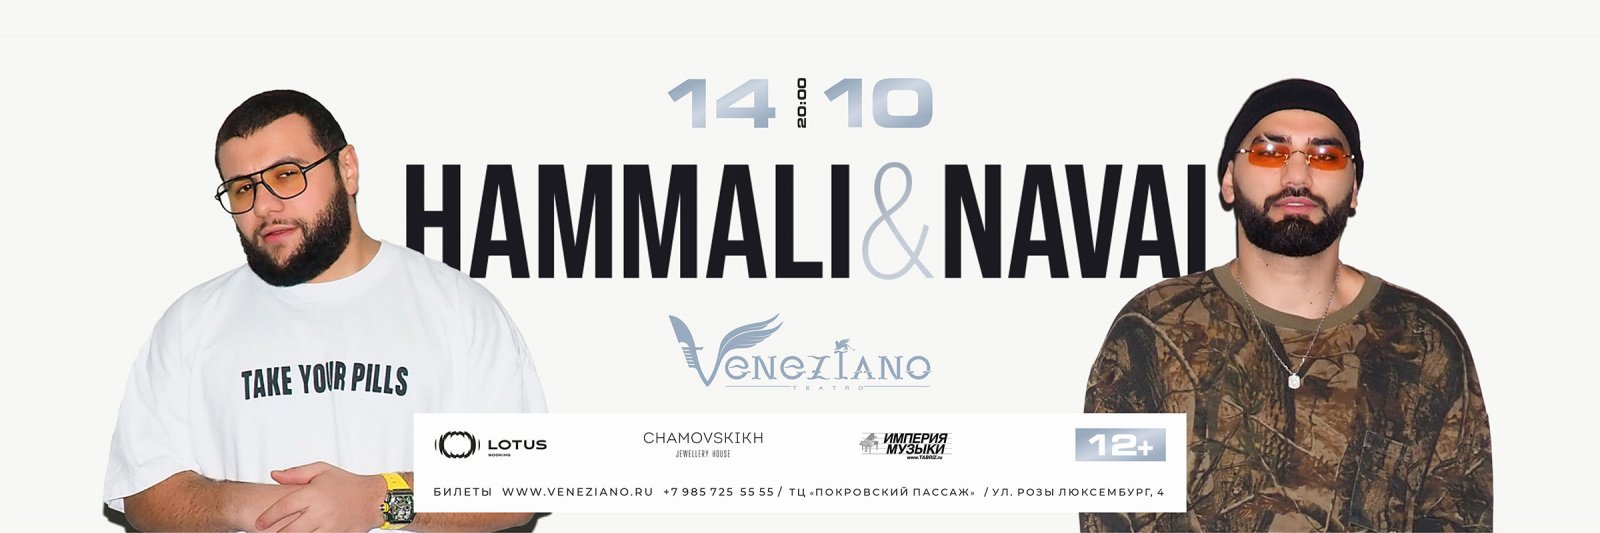 HammAli&Navai в Teatro Veneziano 